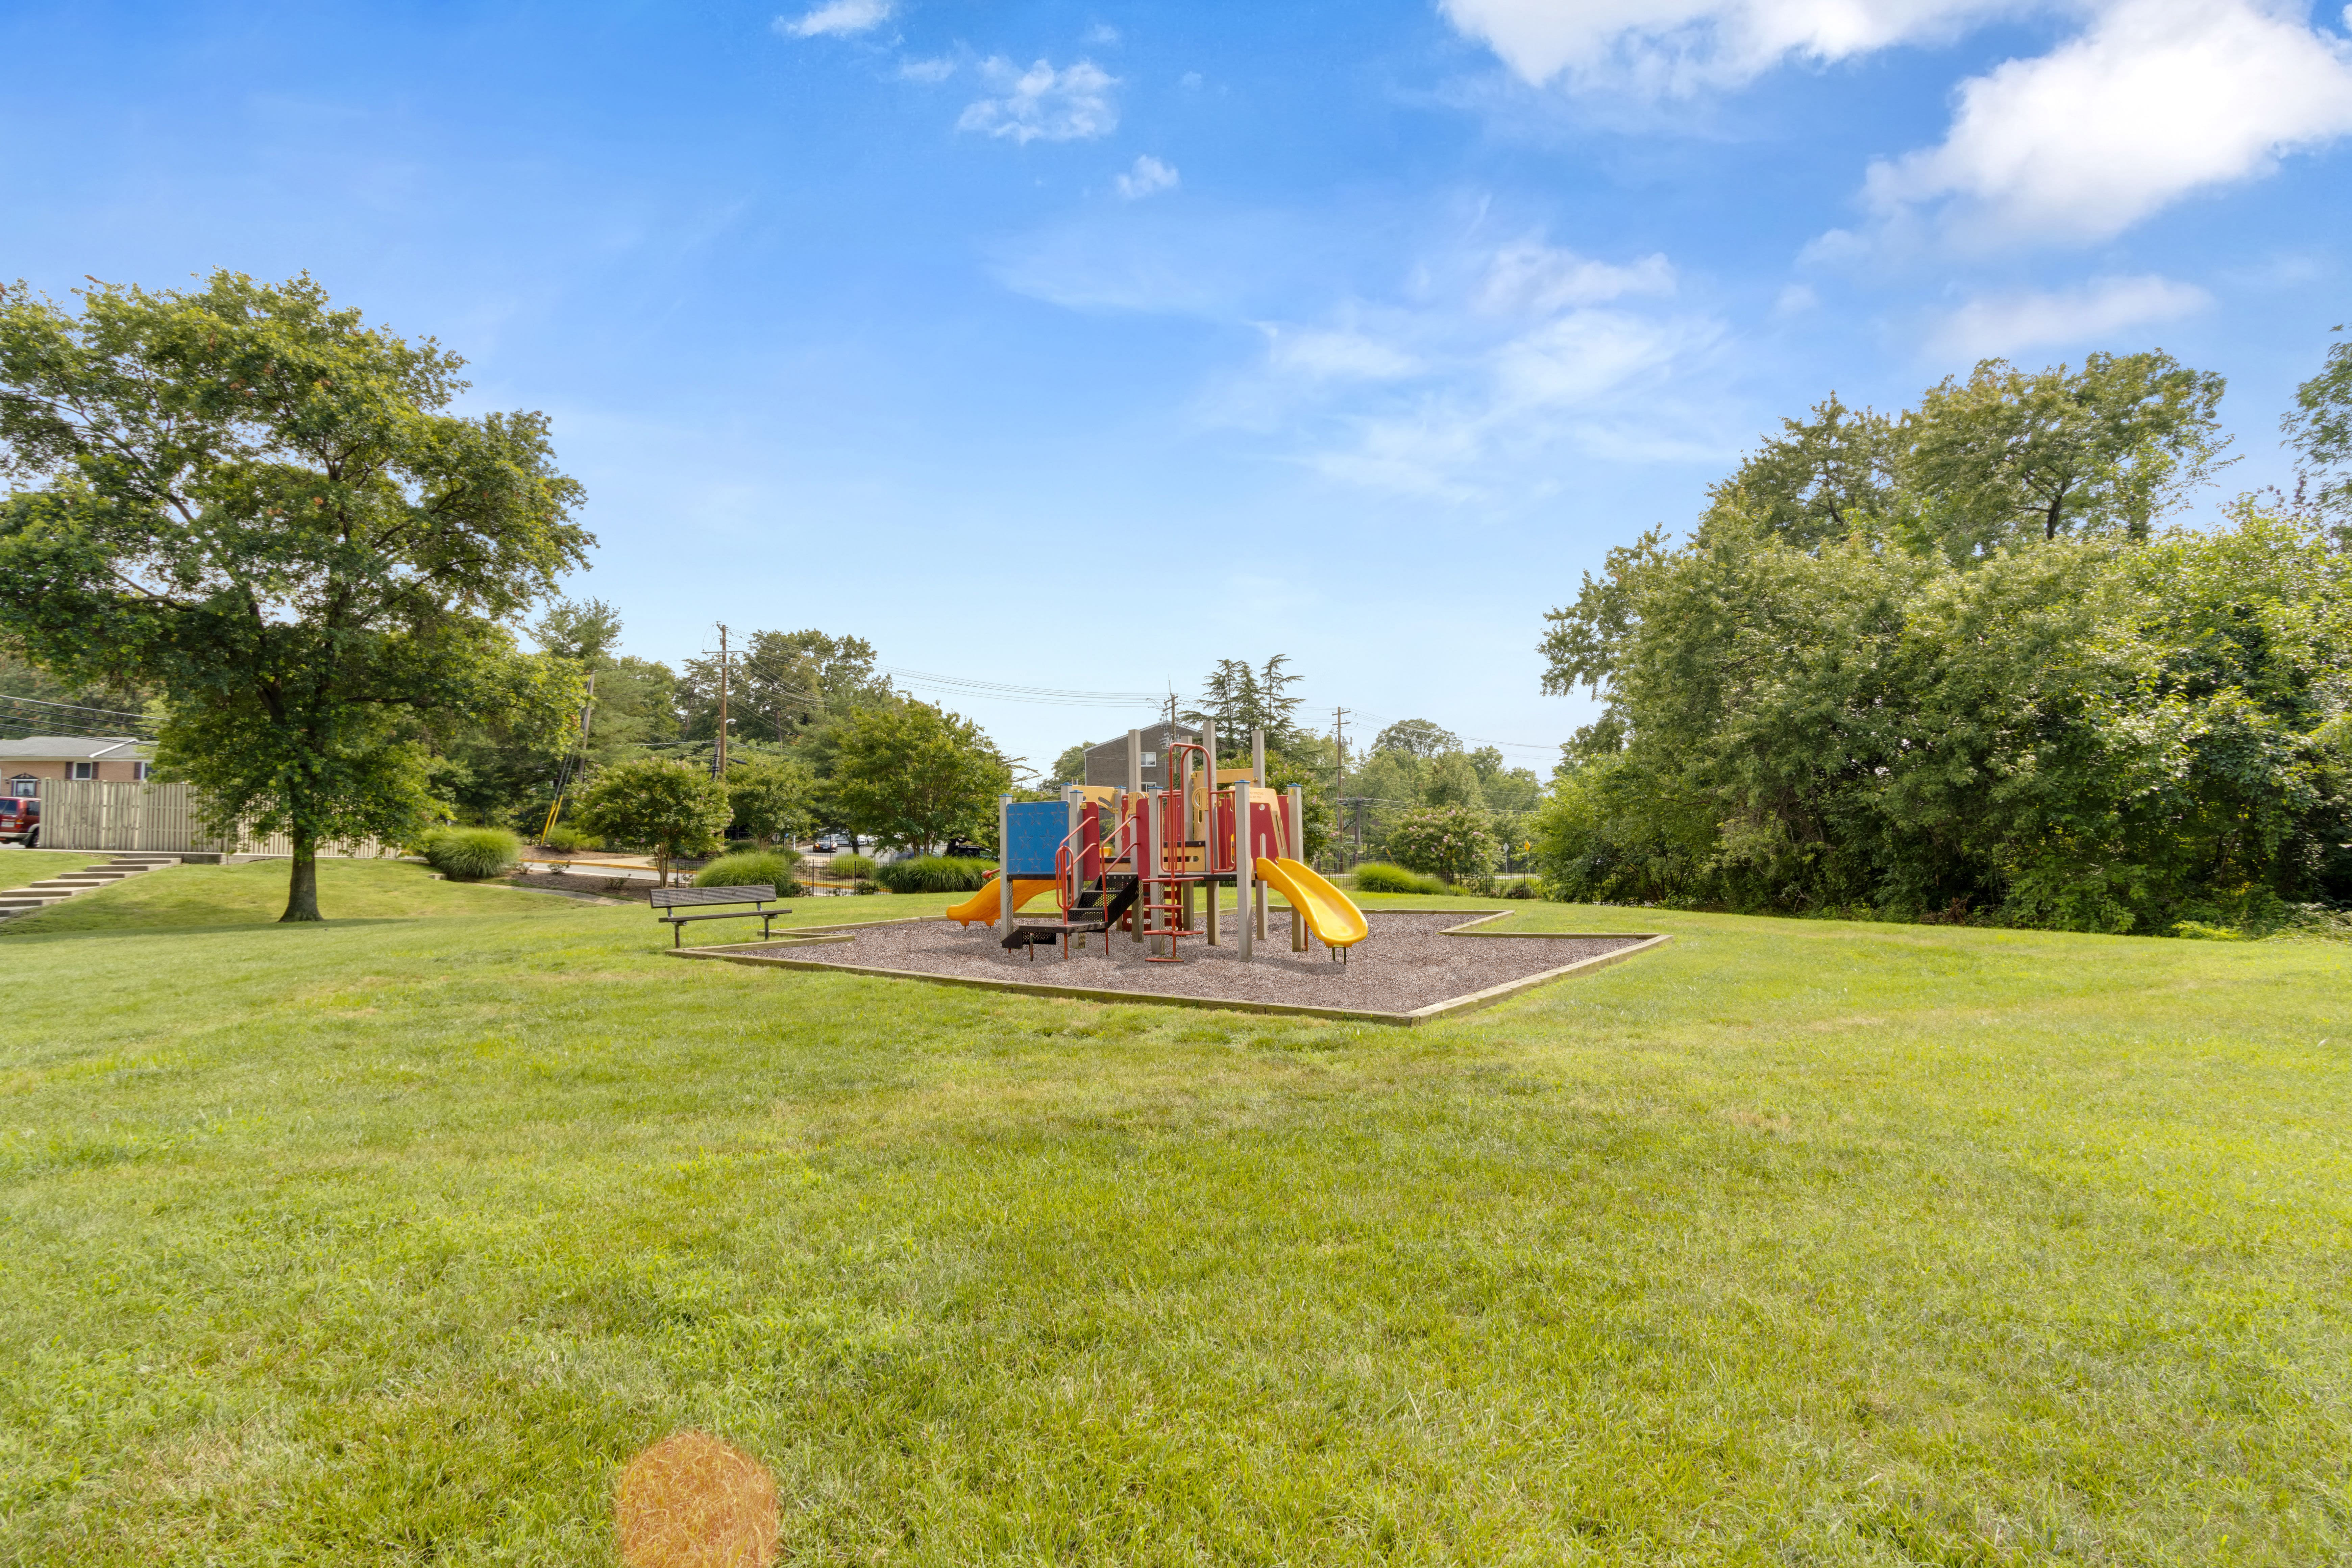 Playground in Regency Pointe in Forestville,MD